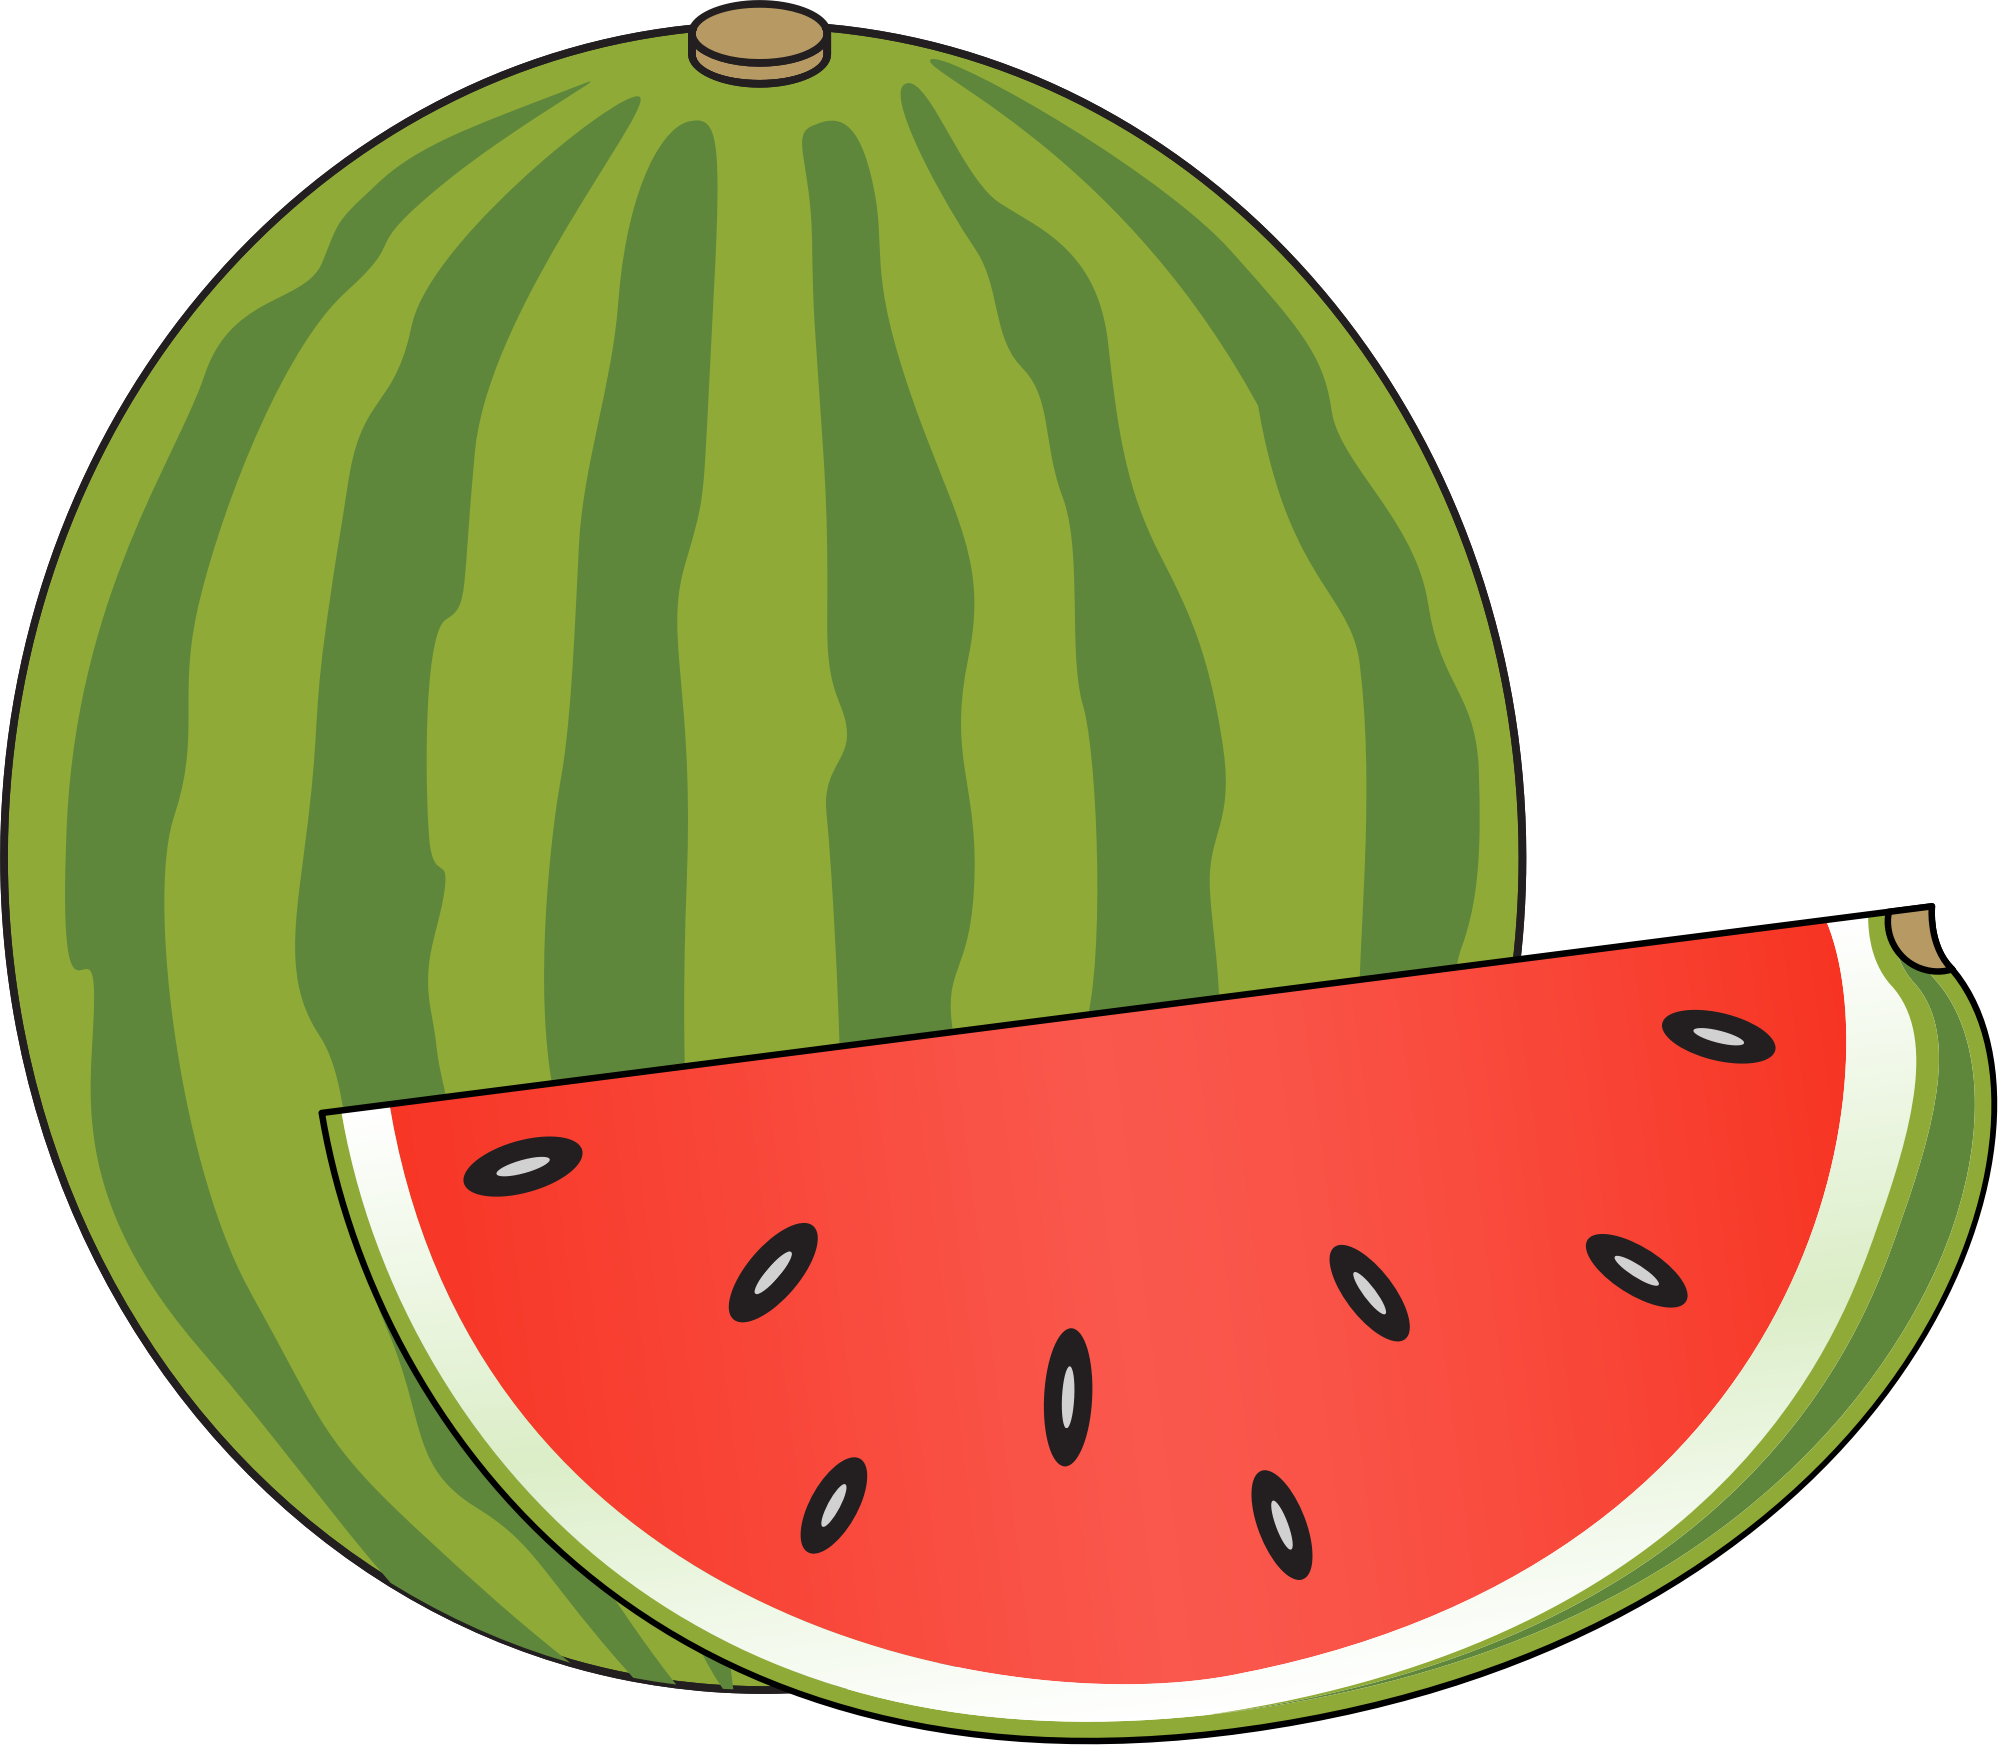 Watermelon clipart small watermelon, Watermelon small